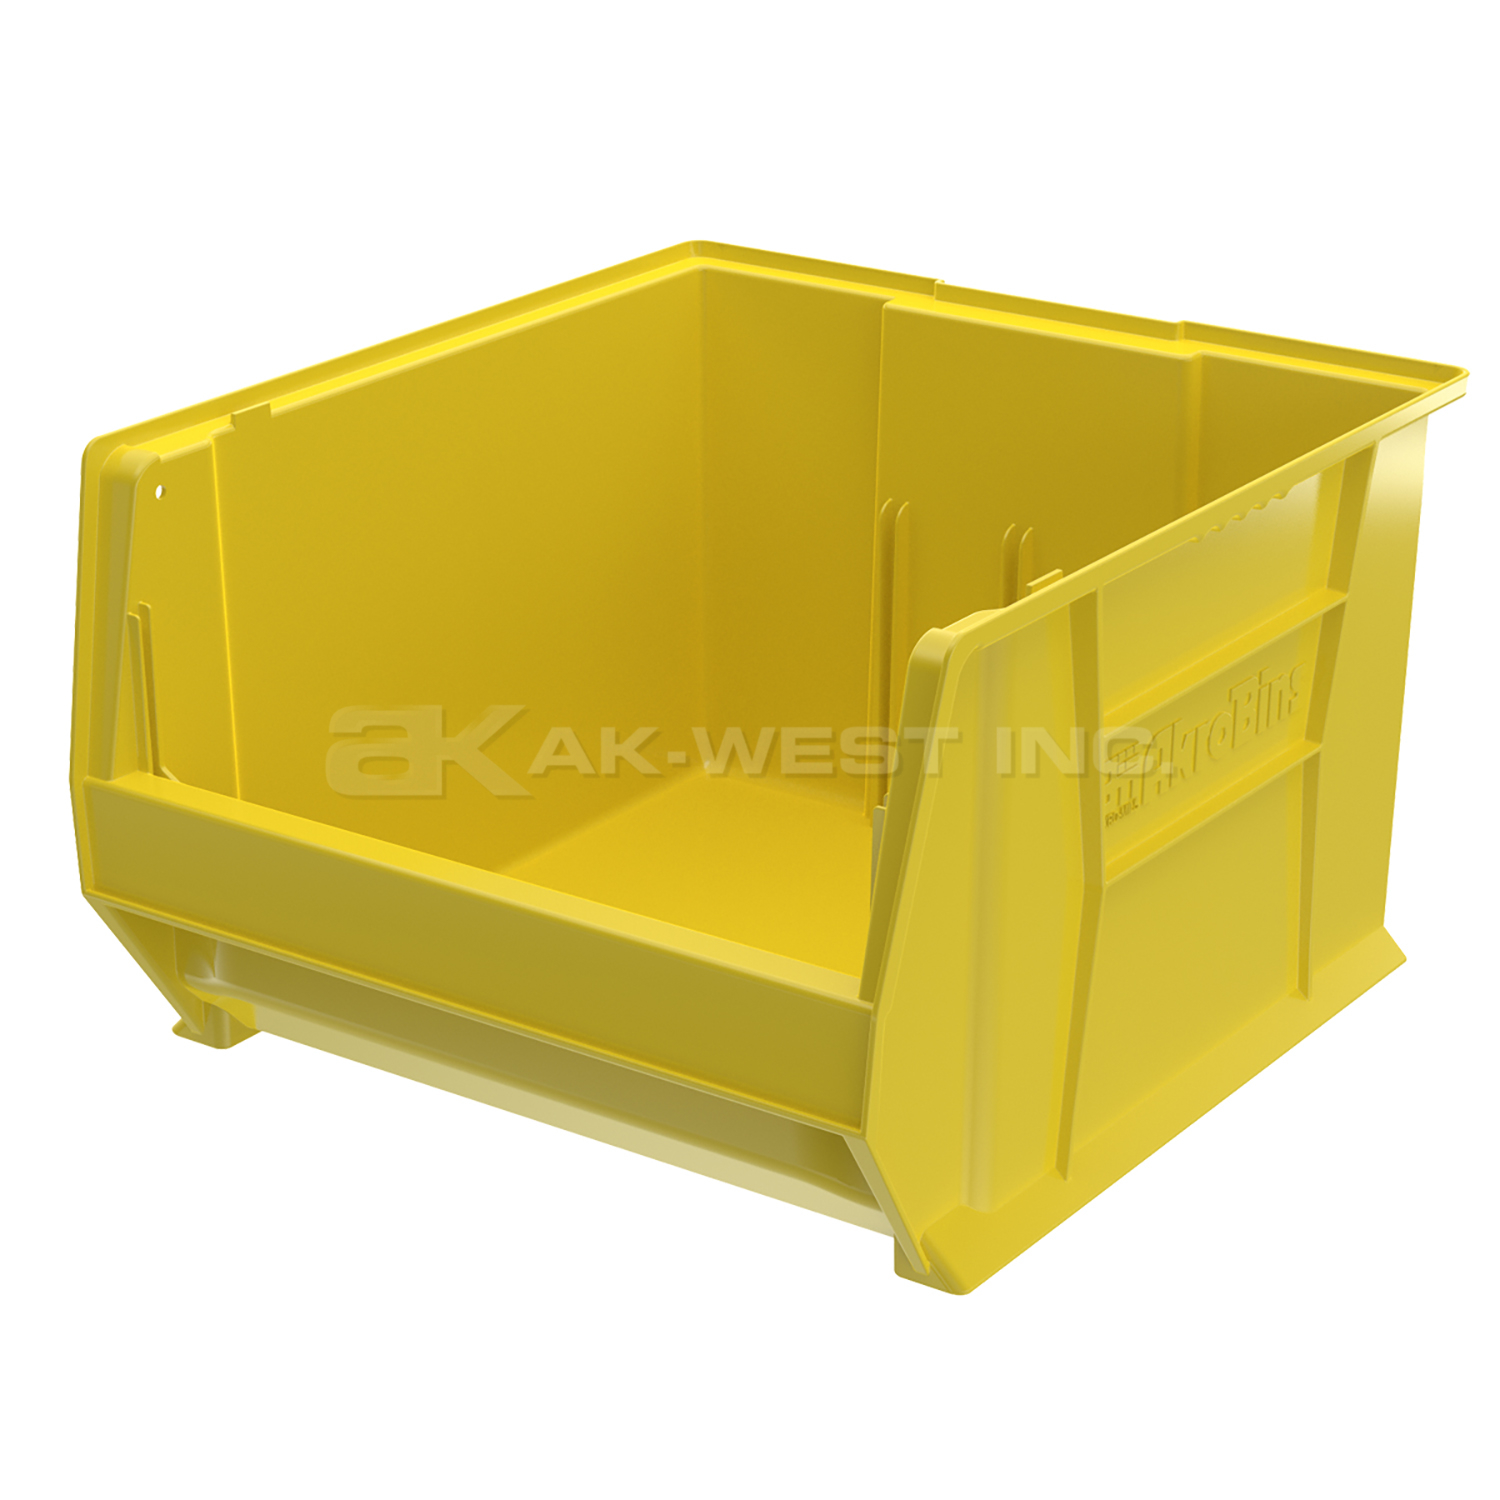 Yellow, 20" x 18-1/8" x 12" Stacking Shelf Bin (1 Per Carton)